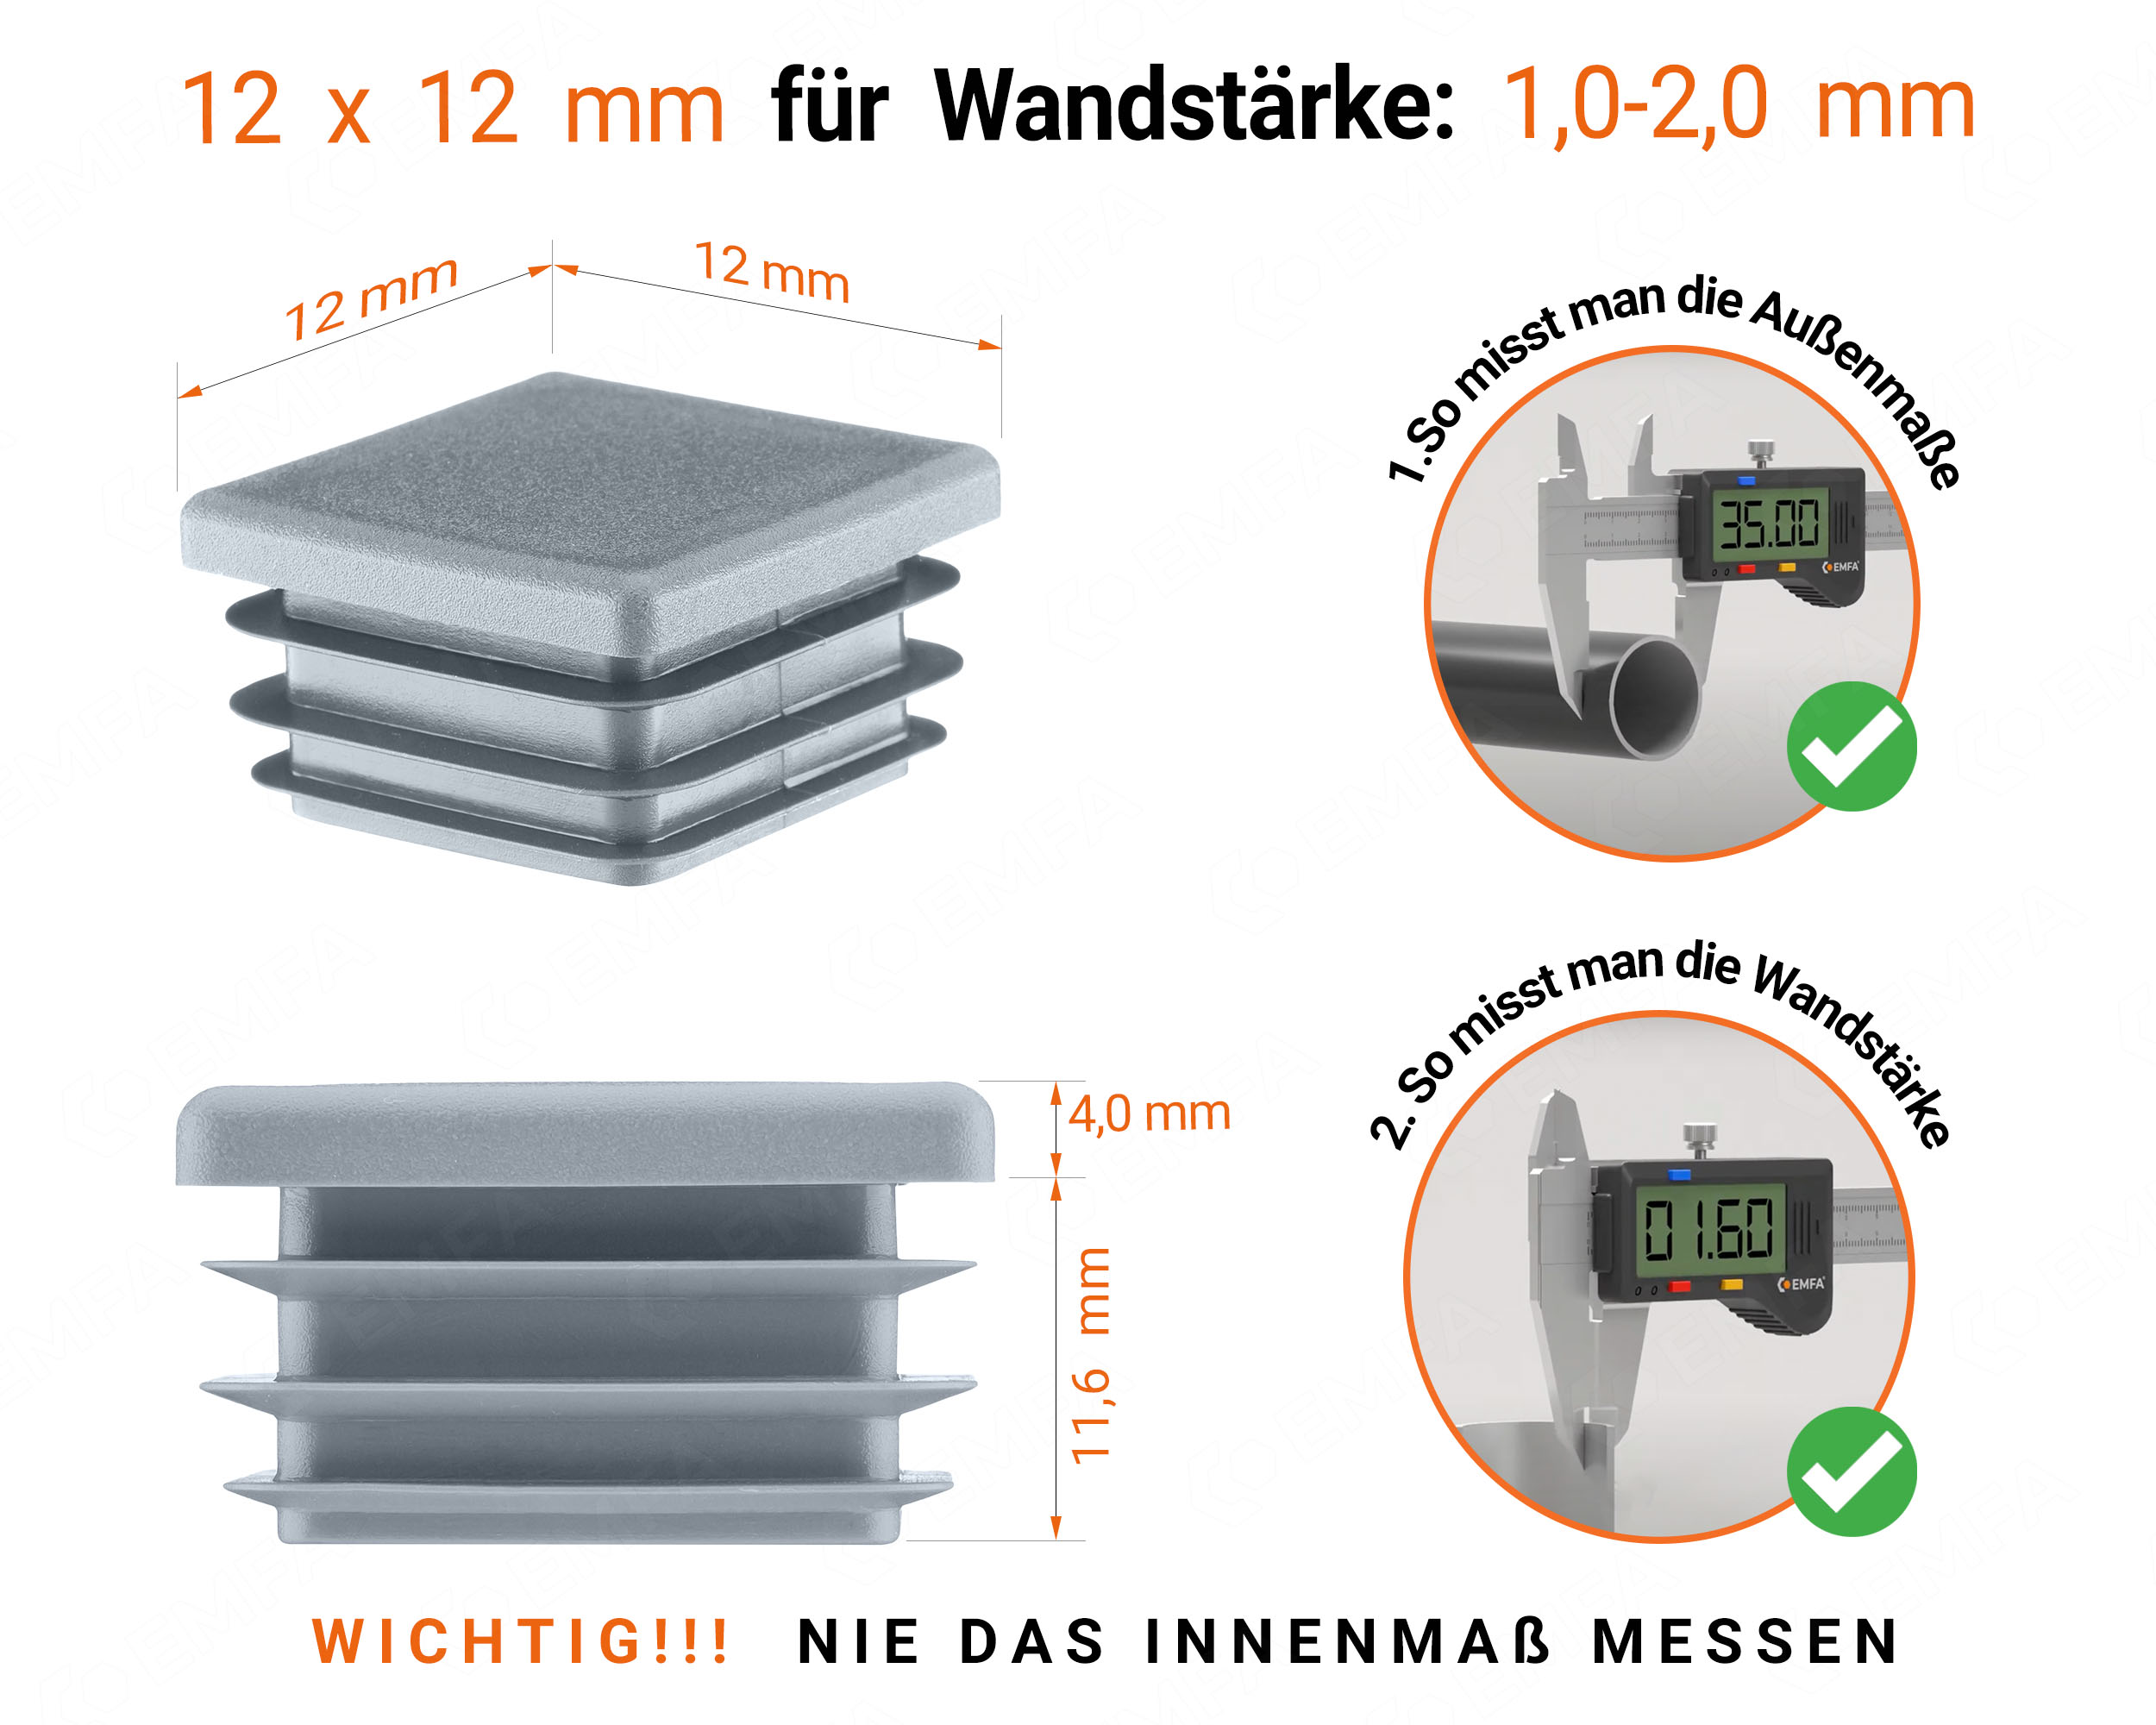 Grau Endkappe für Vierkantrohre in der Größe 12x12 mm mit technischen Abmessungen und Anleitung für korrekte Messung